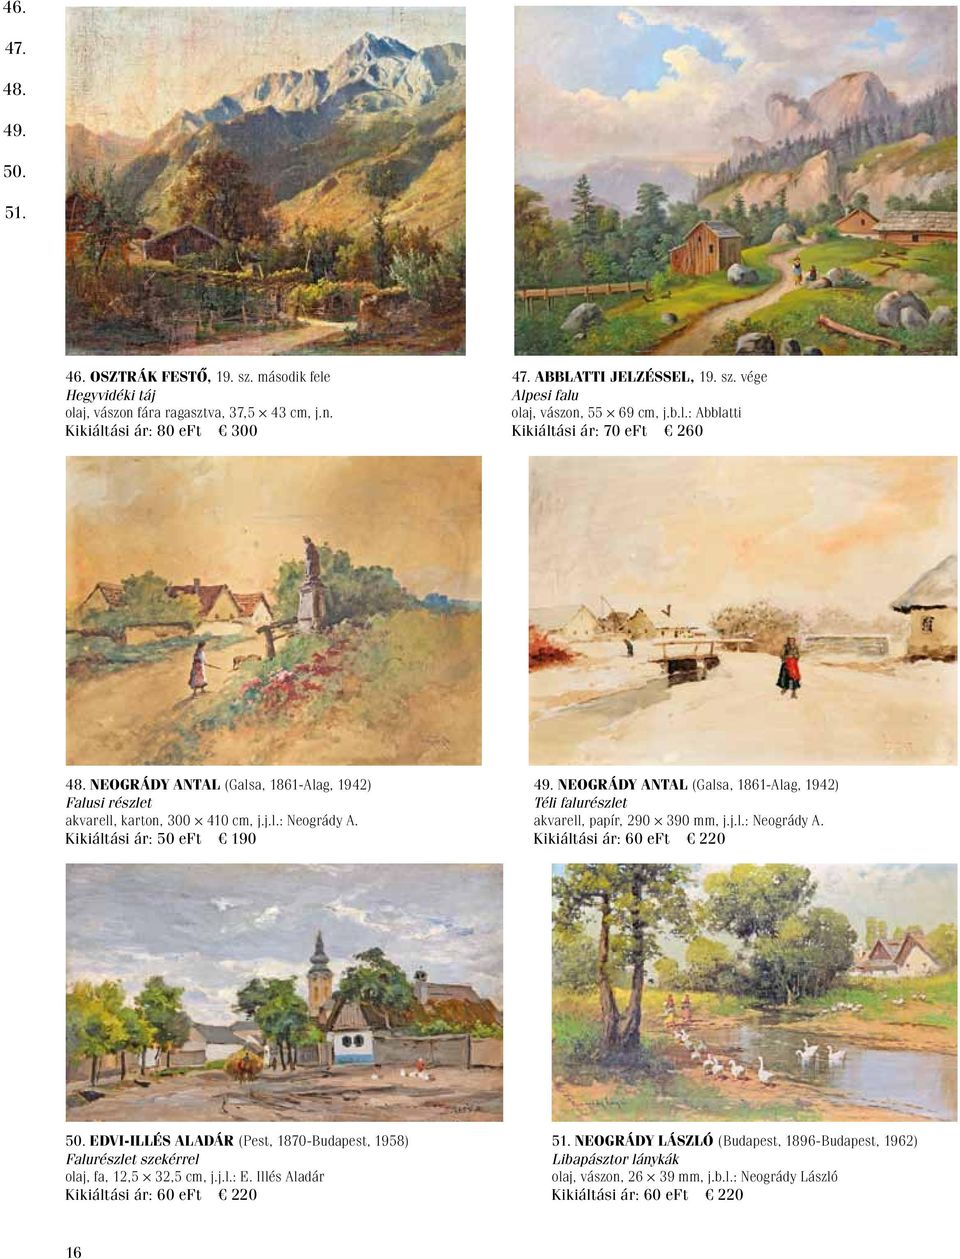 Neogrády Antal (Galsa, 1861-Alag, 1942) Téli falurészlet akvarell, papír, 290 390 mm, j.j.l.: Neogrády A. 50.